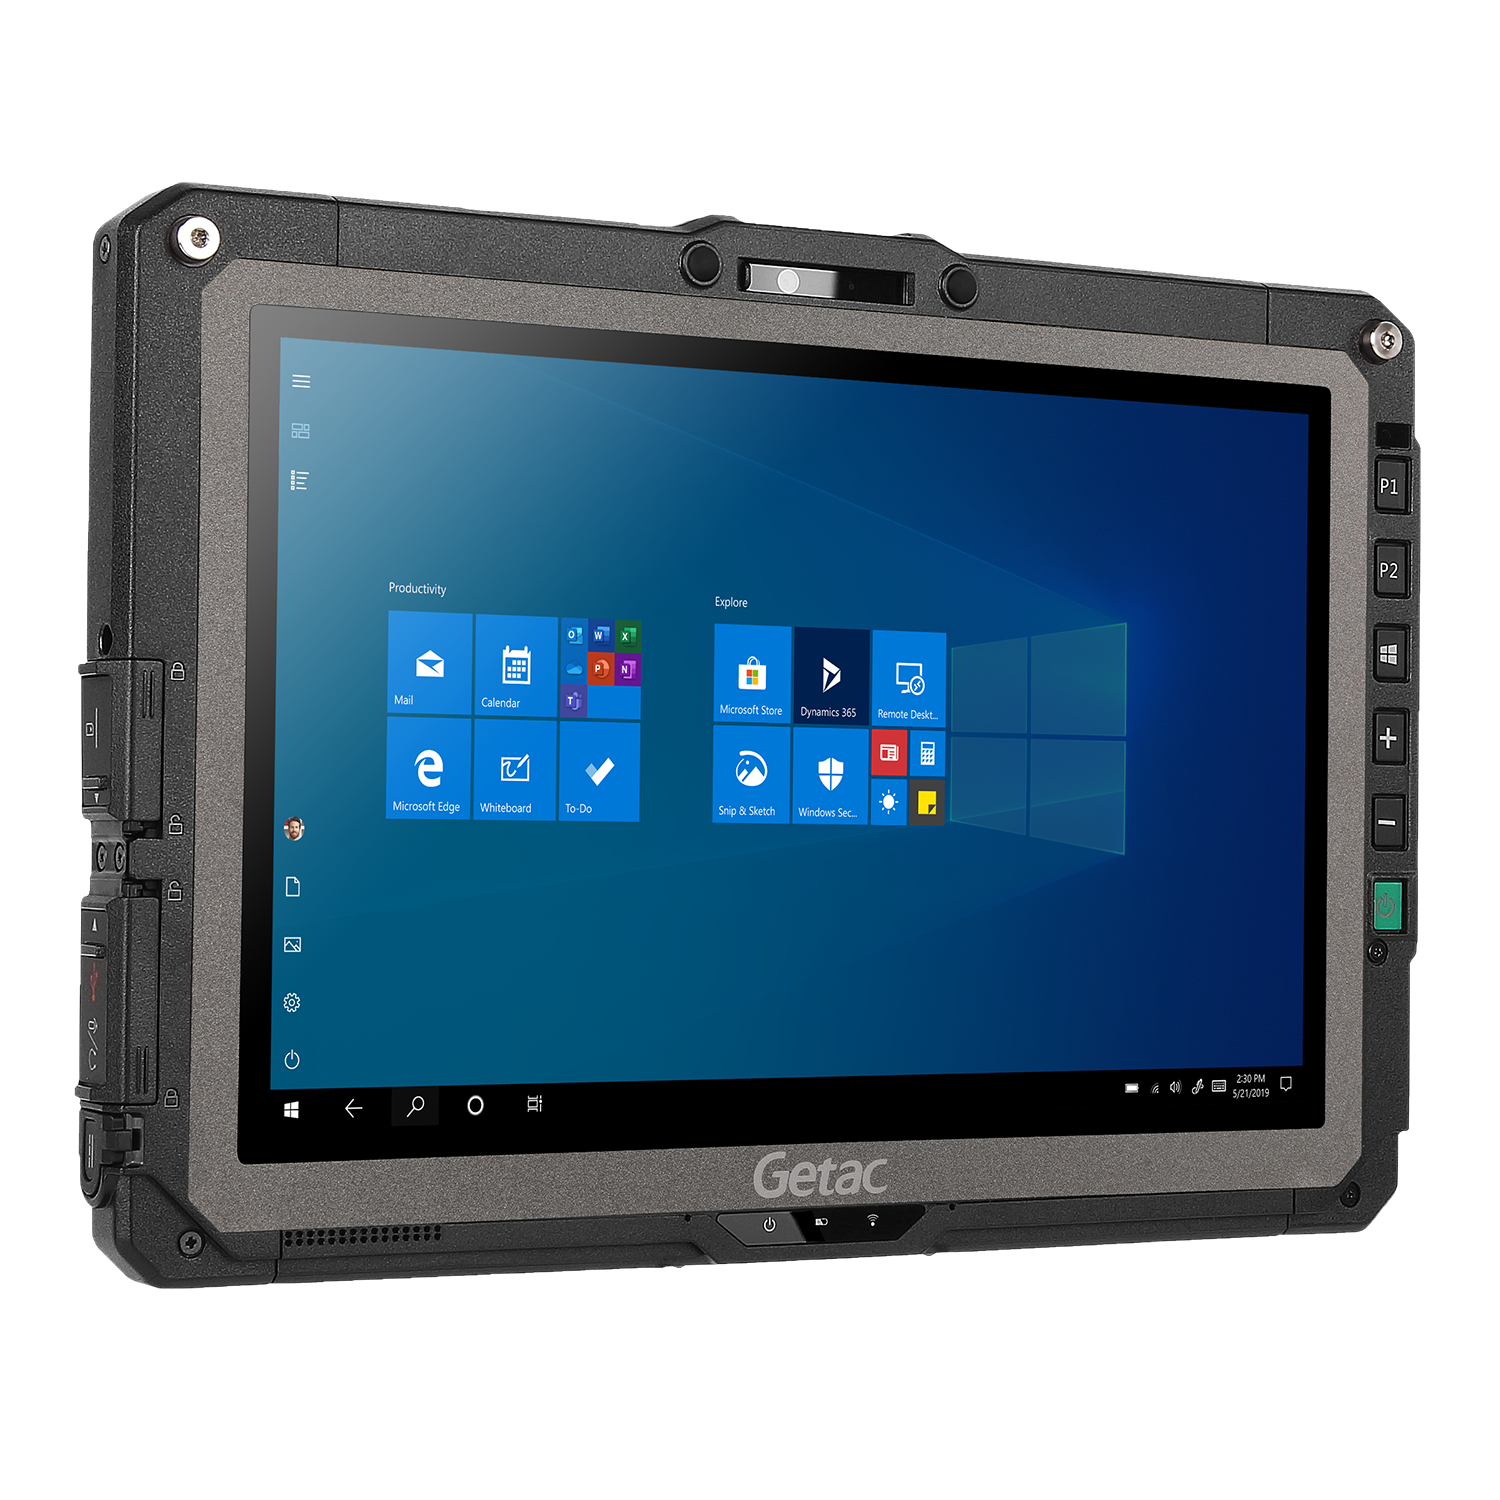 Noua tabletă rigidizată Getac UX10 este acum în portofoliul ELKO Romania